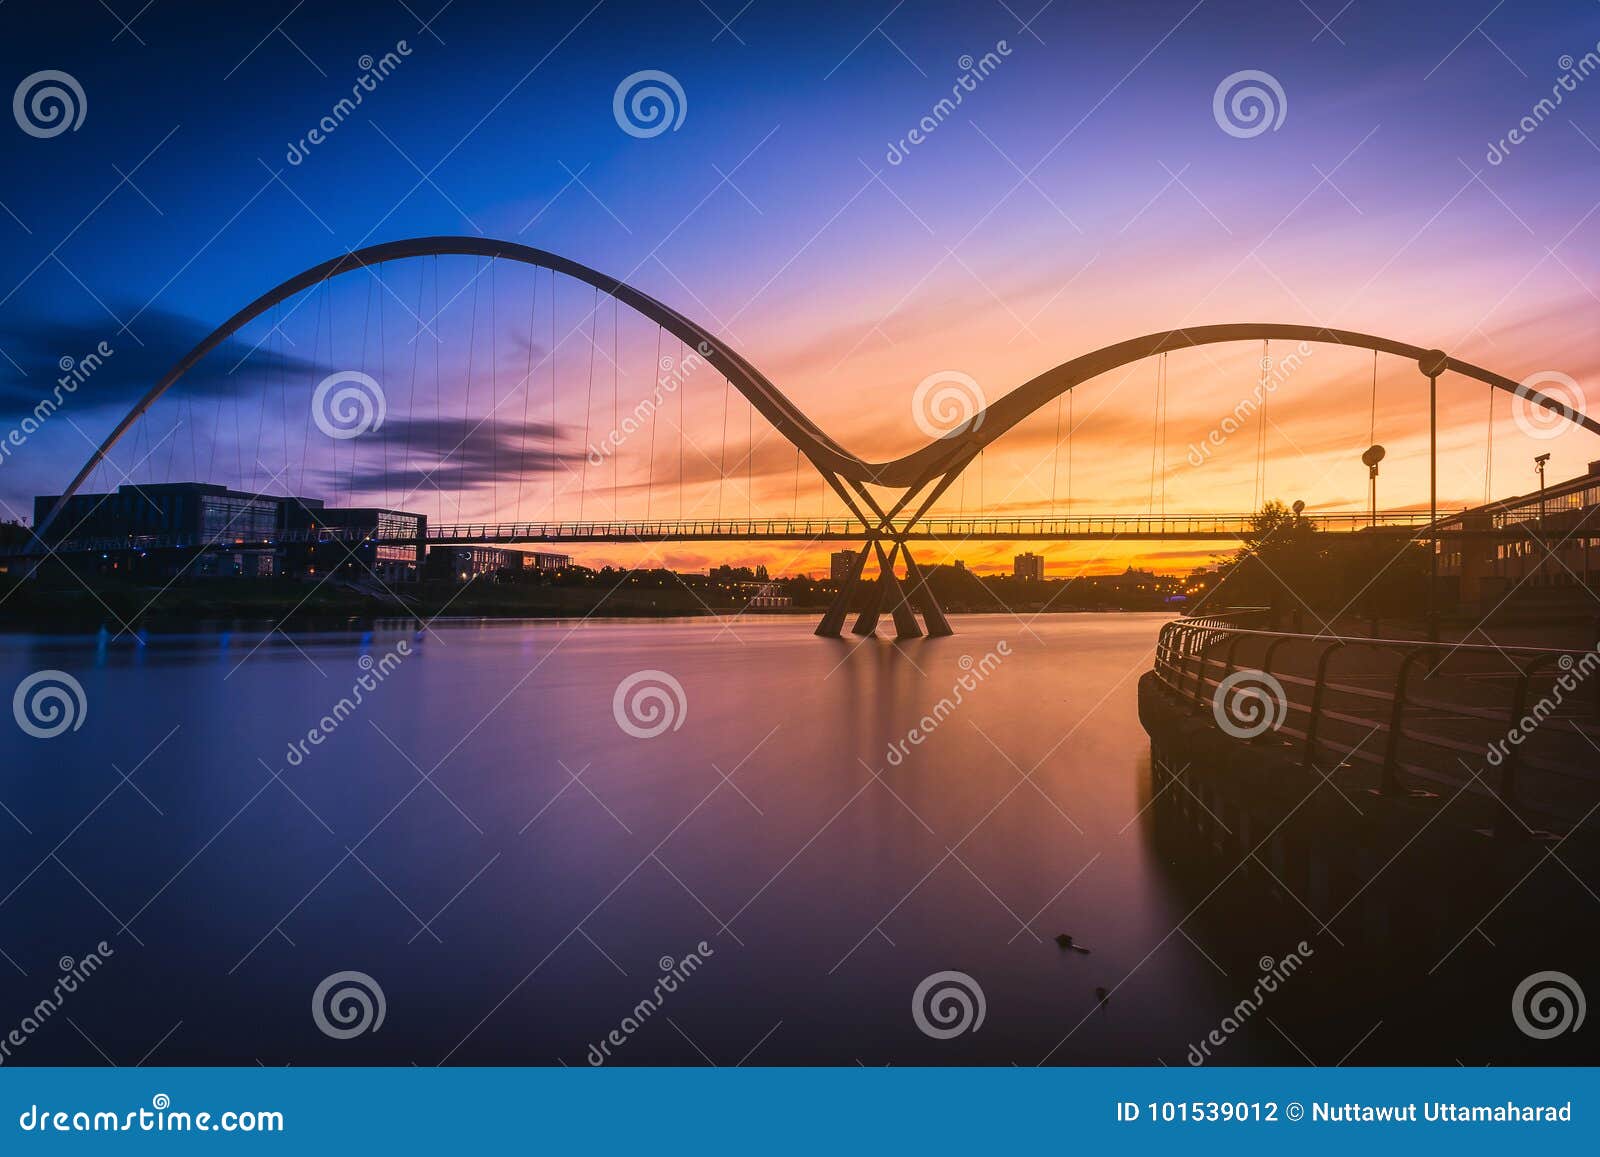 infinity bridge at sunset in stockton-on-tees